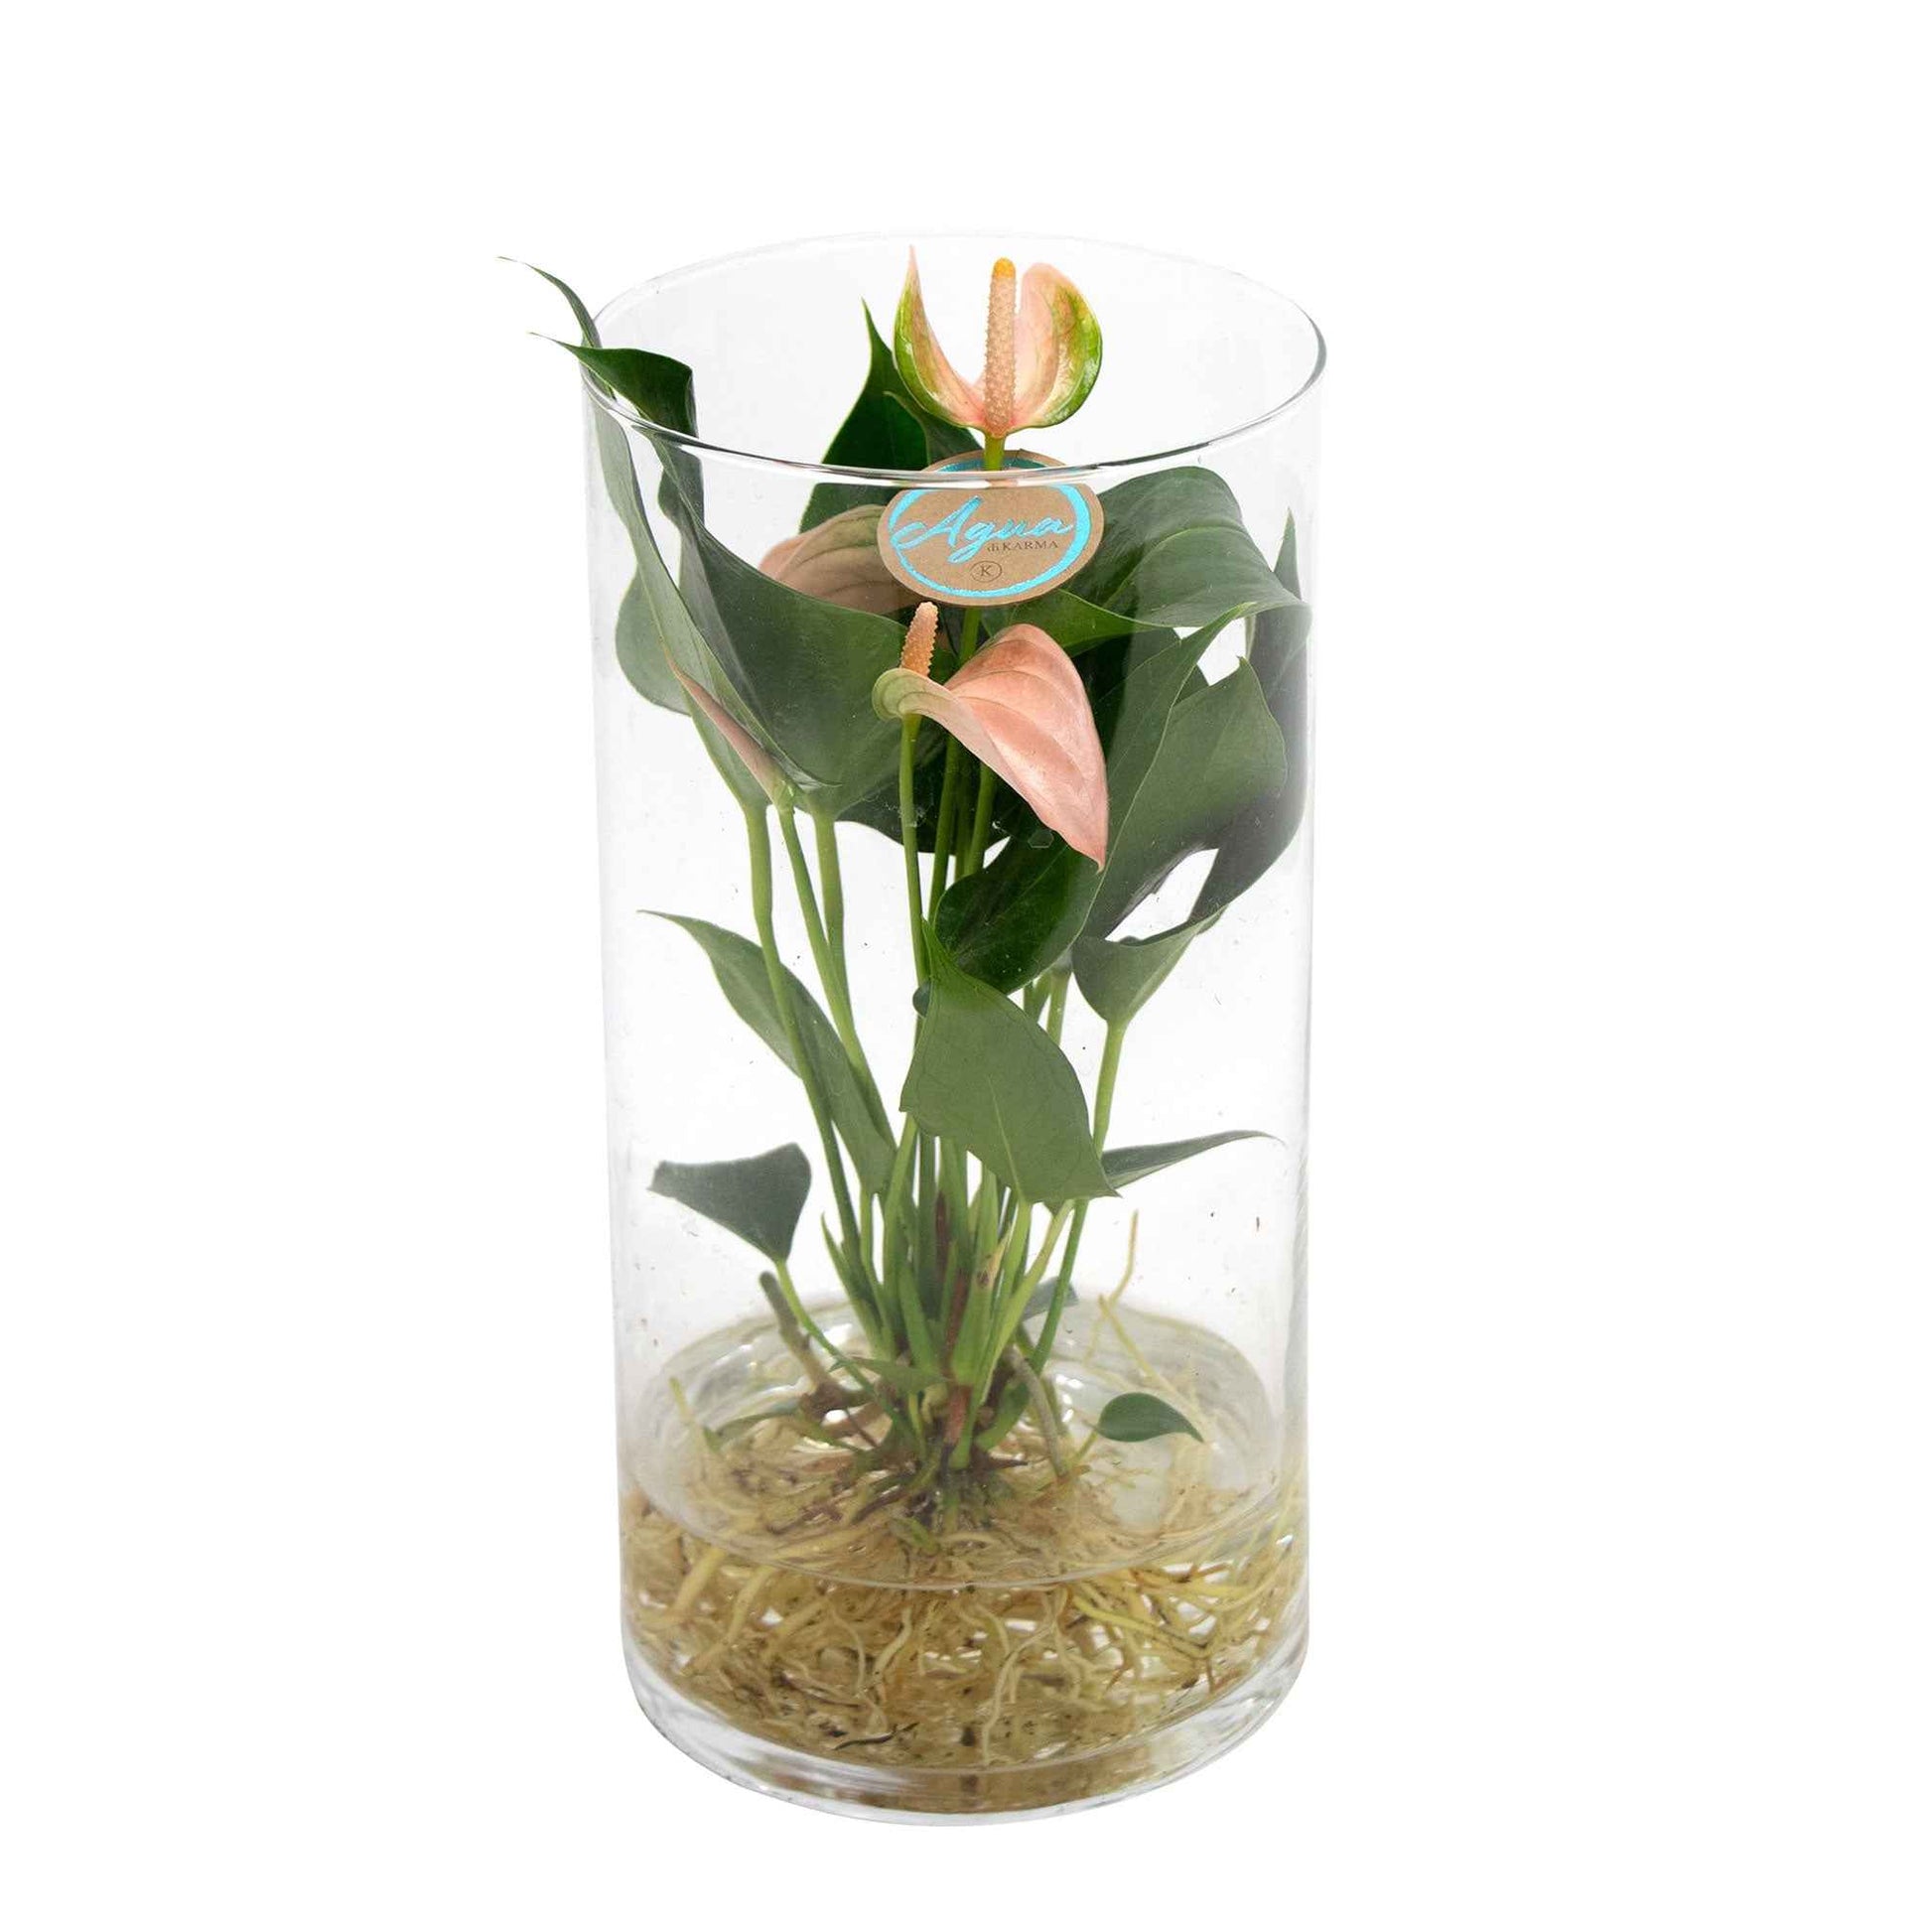 Flamingoplant Anthurium Joli Peach Zalm incl. glazen sierpot - Hydroponie - Bloeiende kamerplanten